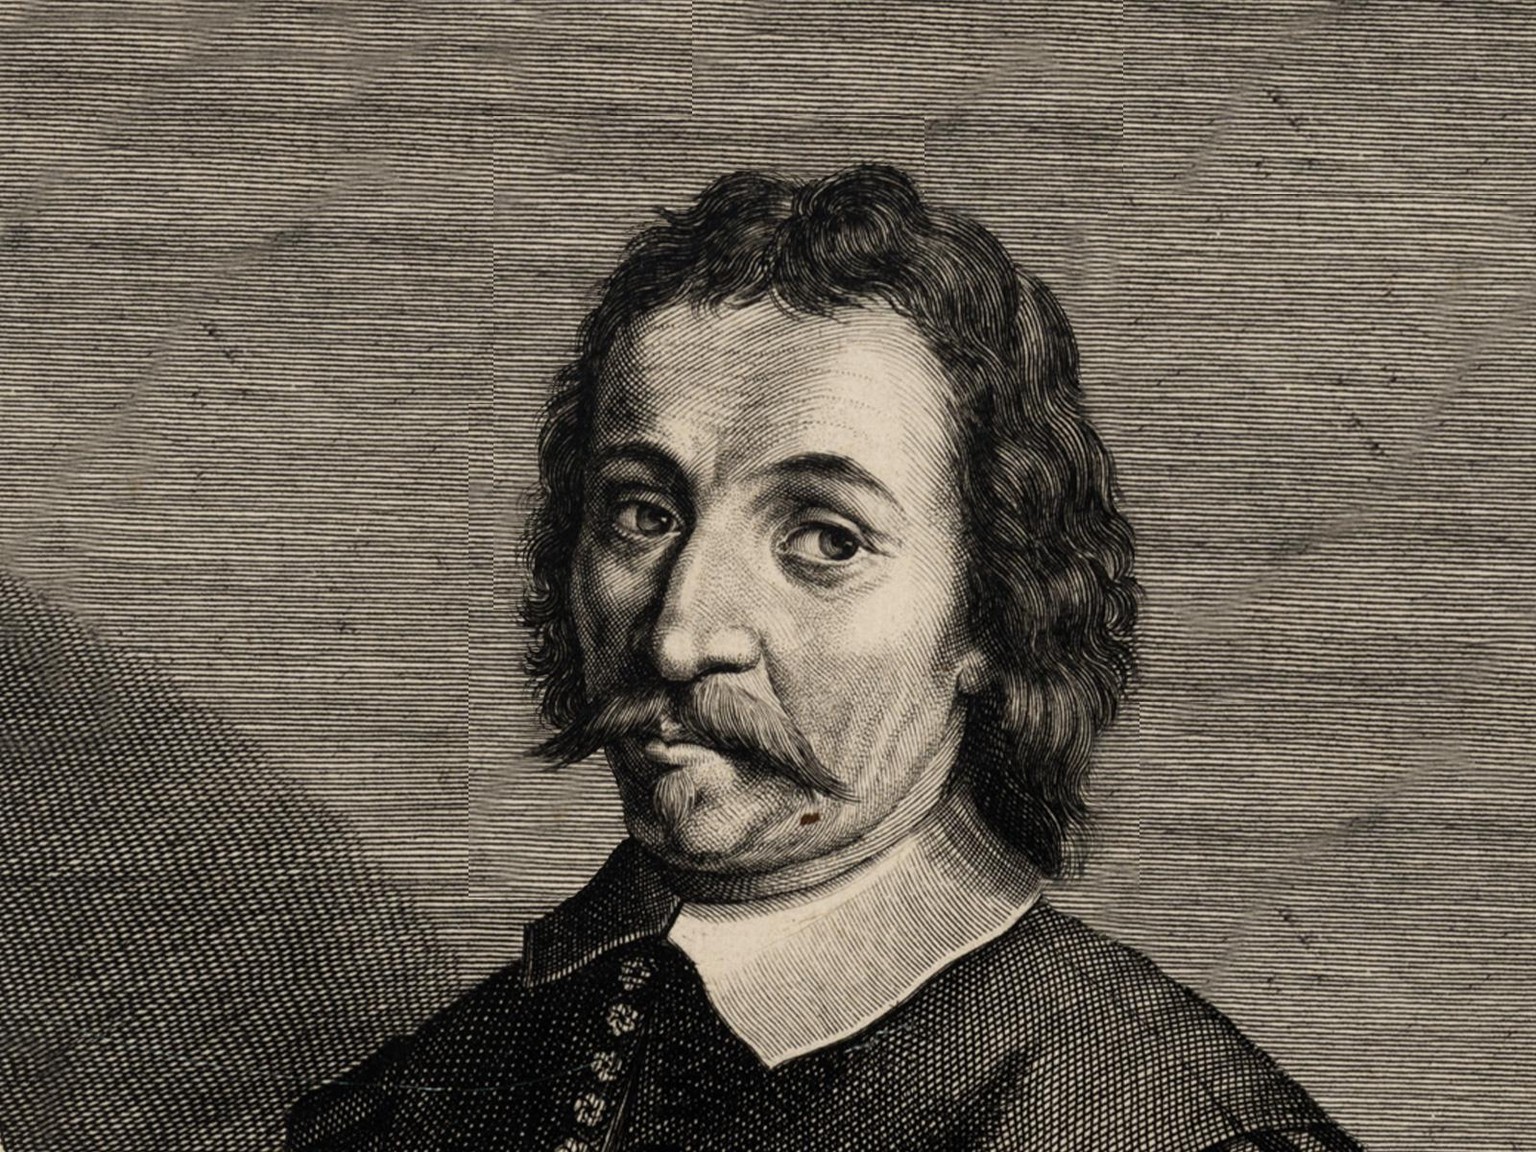 Niklaus Leuenberger (1615–1653) von Rüderswil BE, Anführer der bernischen Aufstandsbewegung.